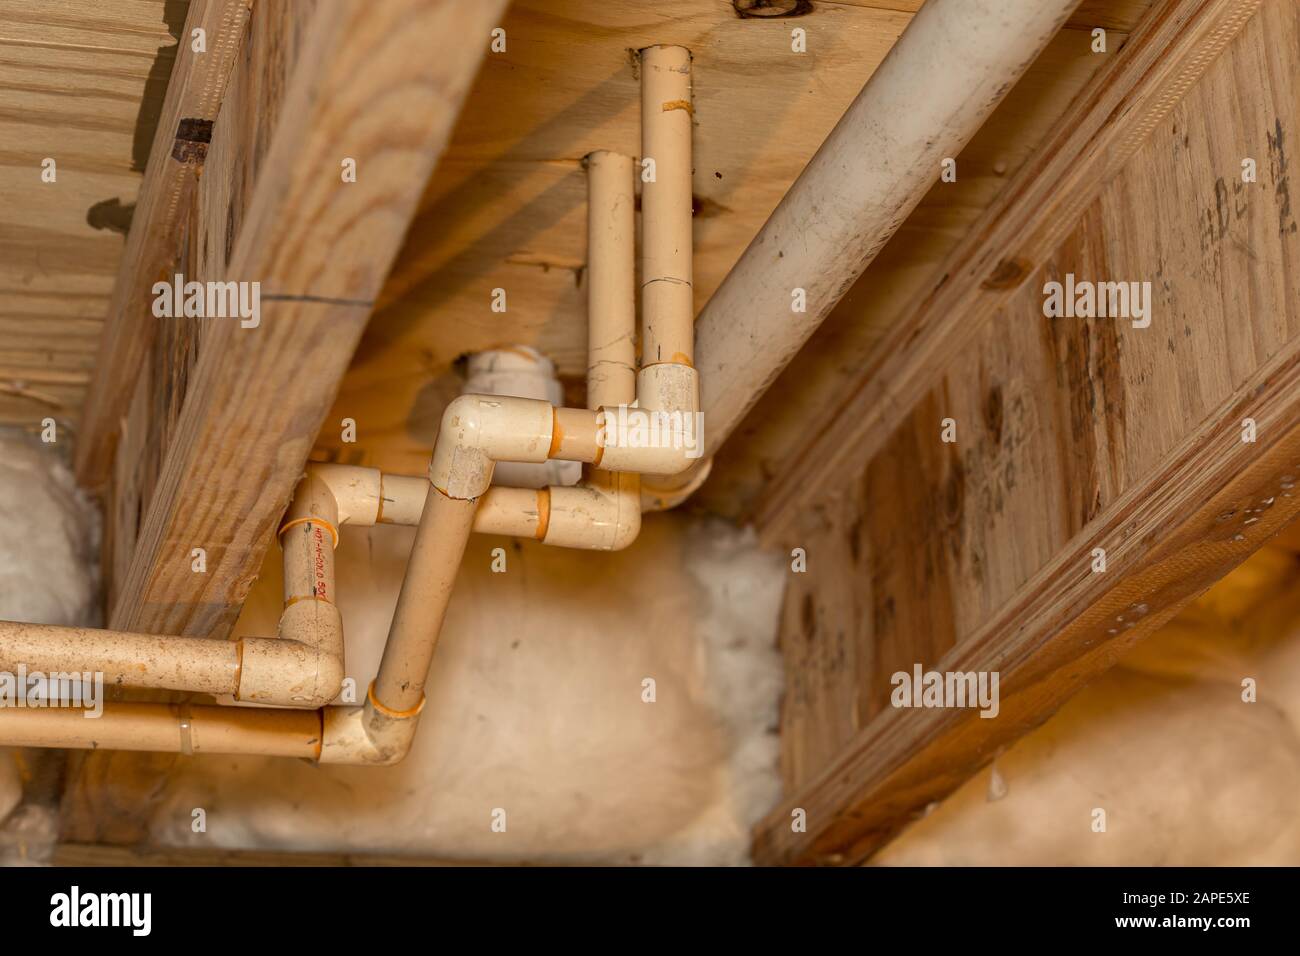 Tuberías de suministro de agua de plástico de PVC antiguas instaladas bajo la casa en la oruga. Sistema de tuberías de agua fría y caliente para lavabo y ducha en el baño Foto de stock